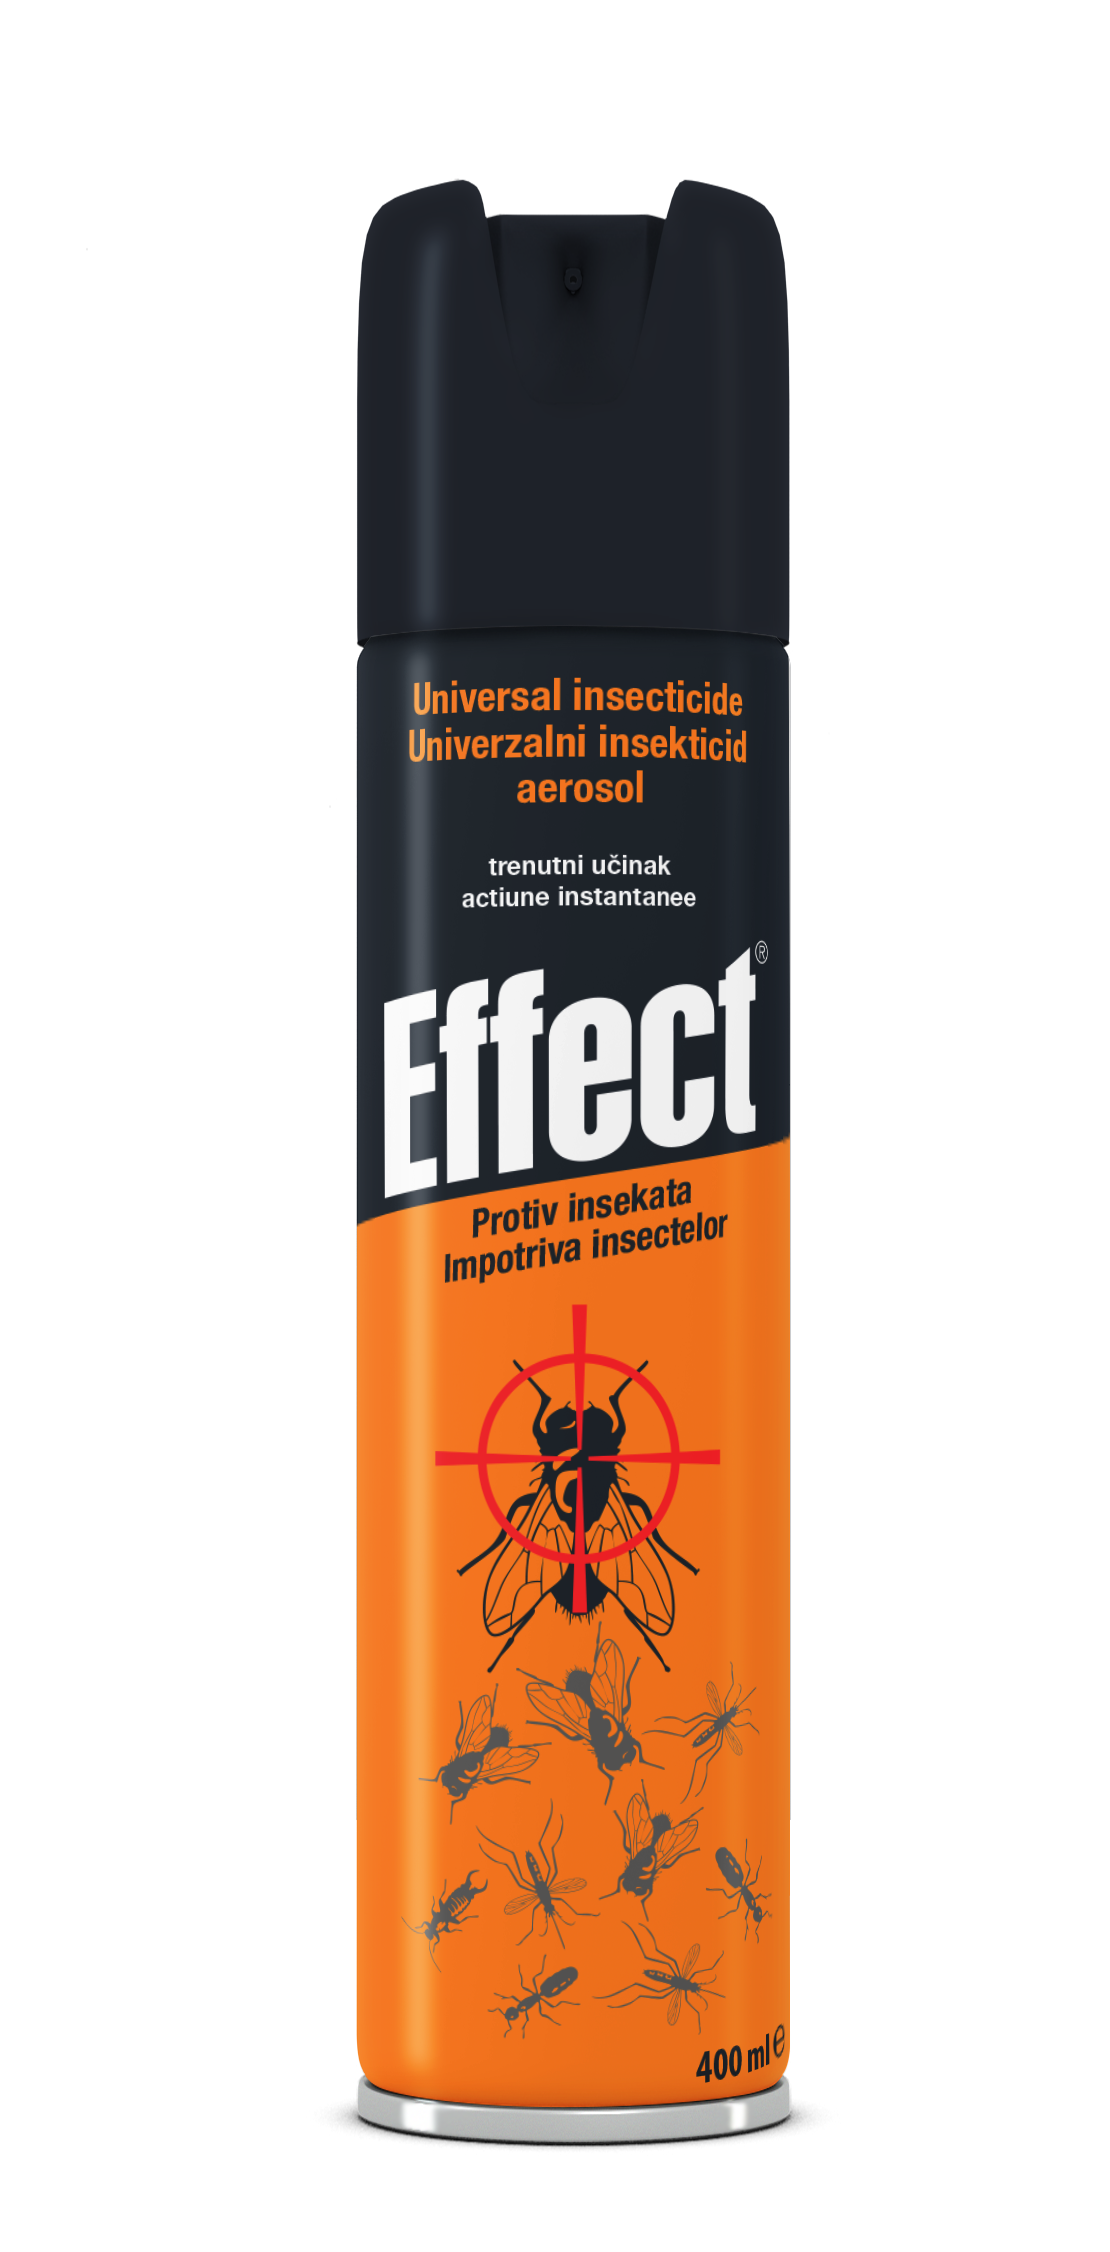 Effect sprej univerzalni protiv letecih i gmizucih insekata 400ml